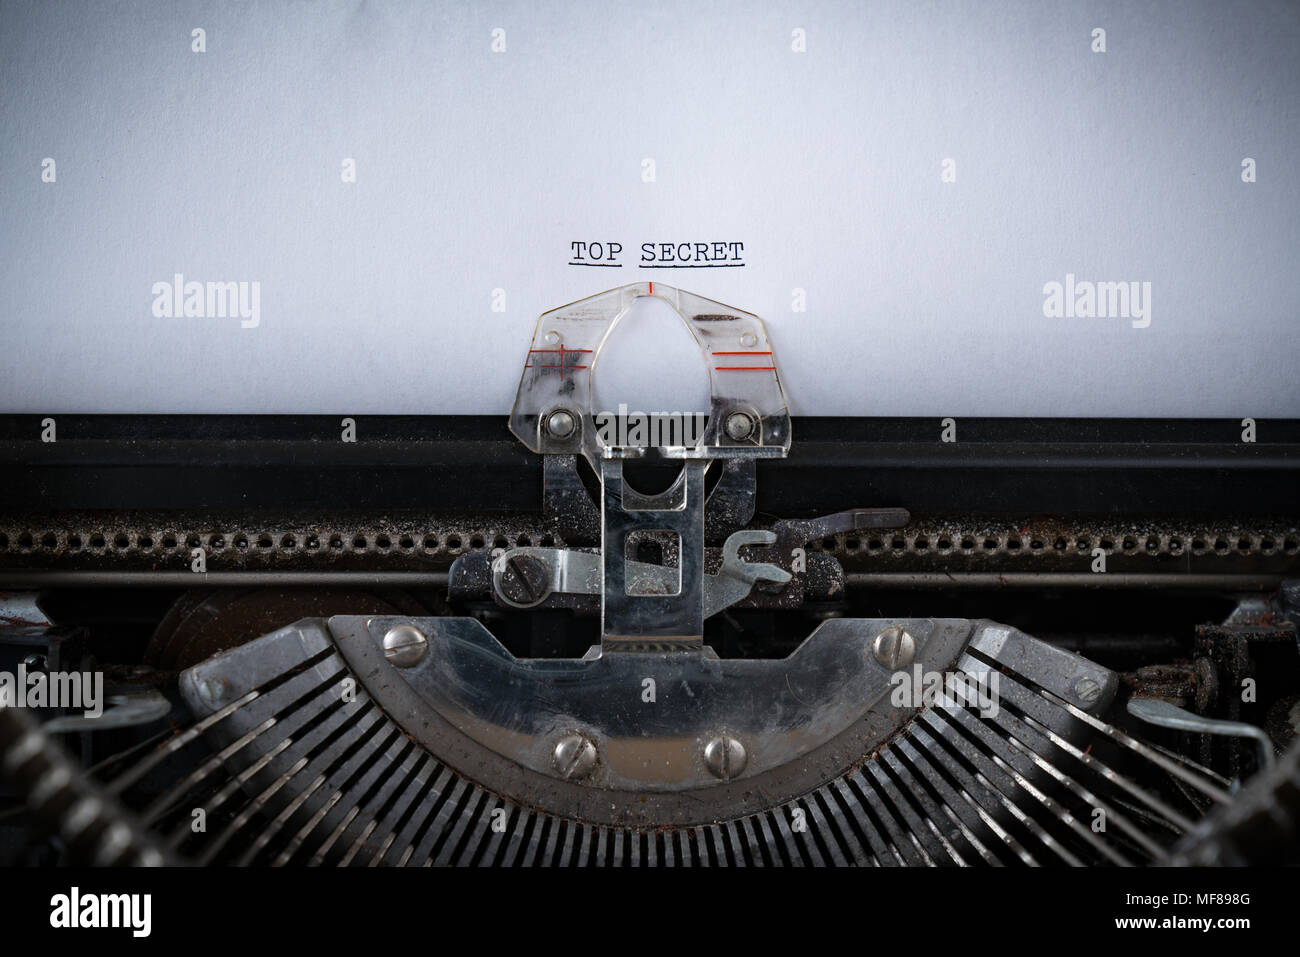 L'expression Top Secret tapé sur une vieille machine à écrire Banque D'Images